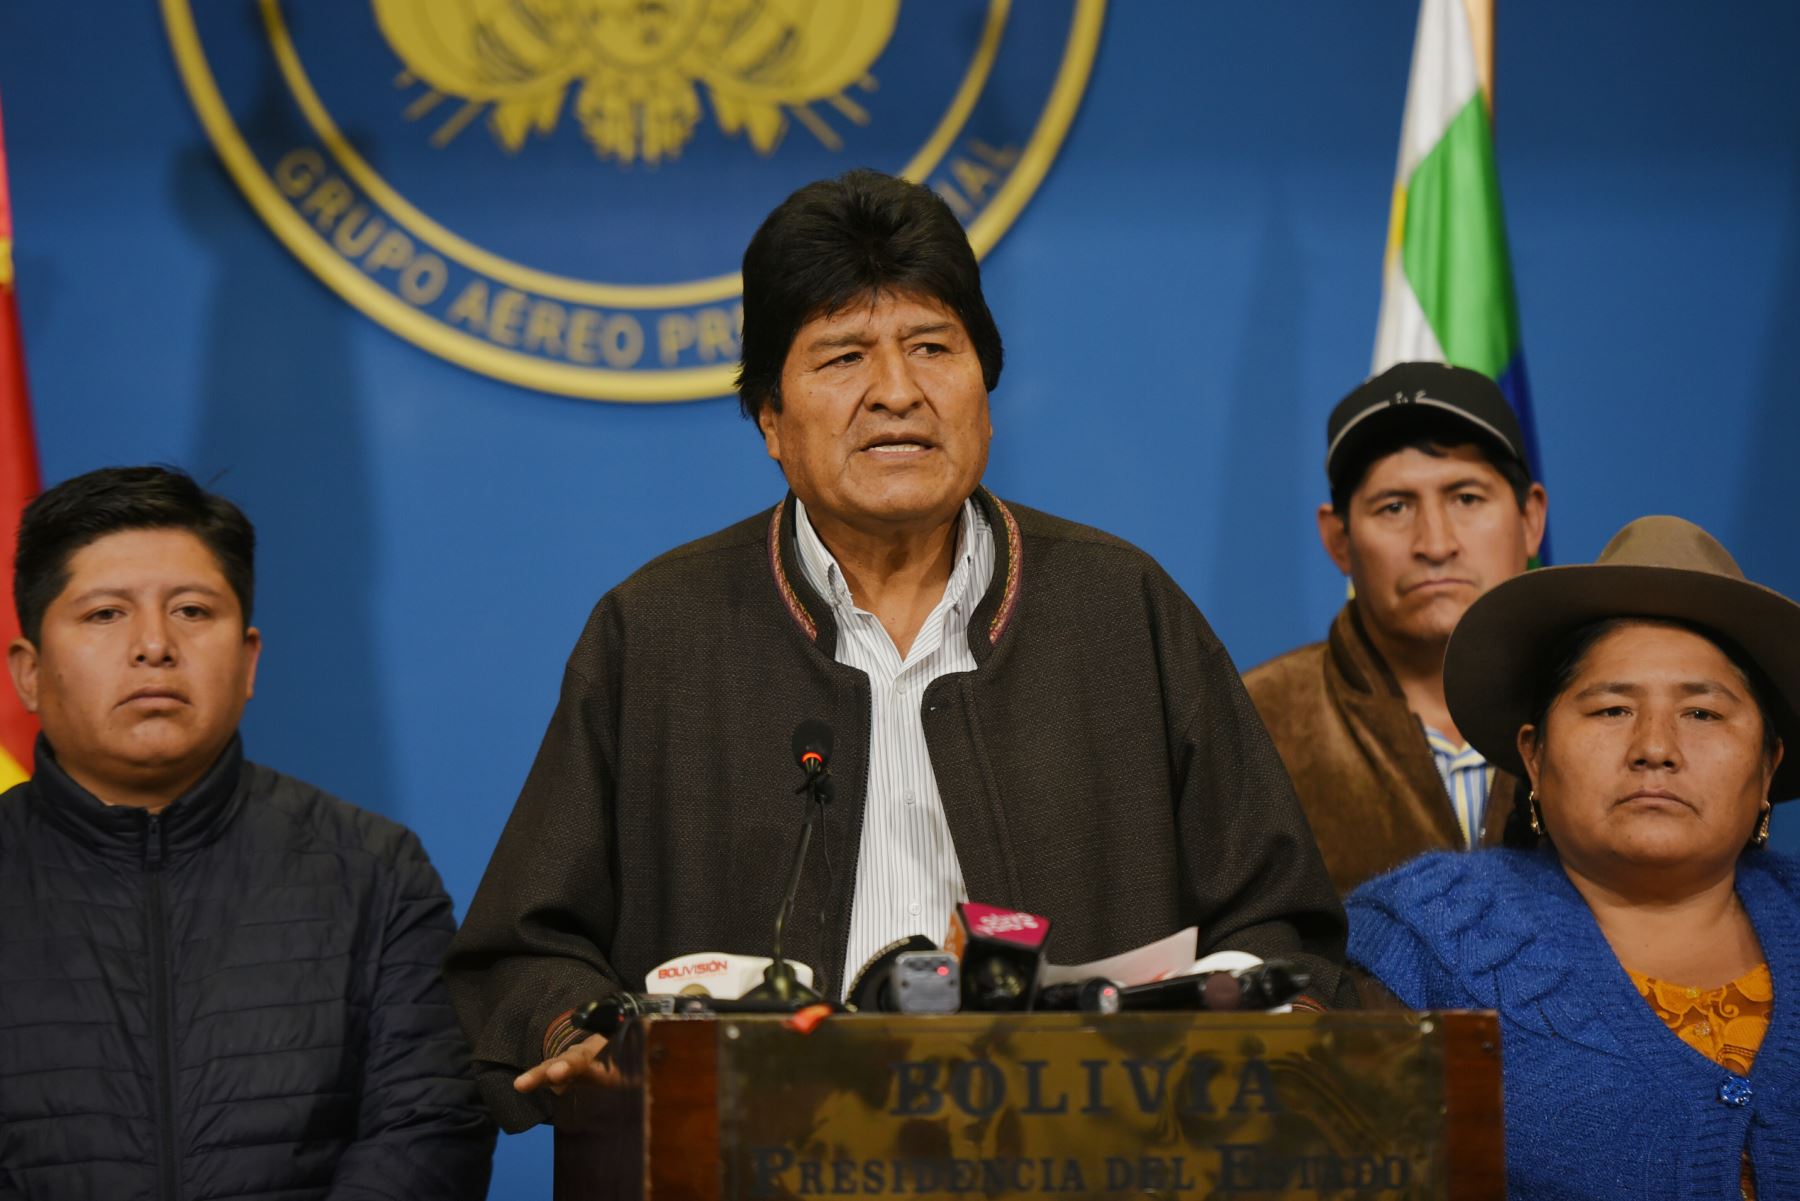 Fuerzas Armadas y Policía piden a Evo Morales renunciar para pacificar Bolivia | Noticias | Agencia Peruana de Noticias Andina